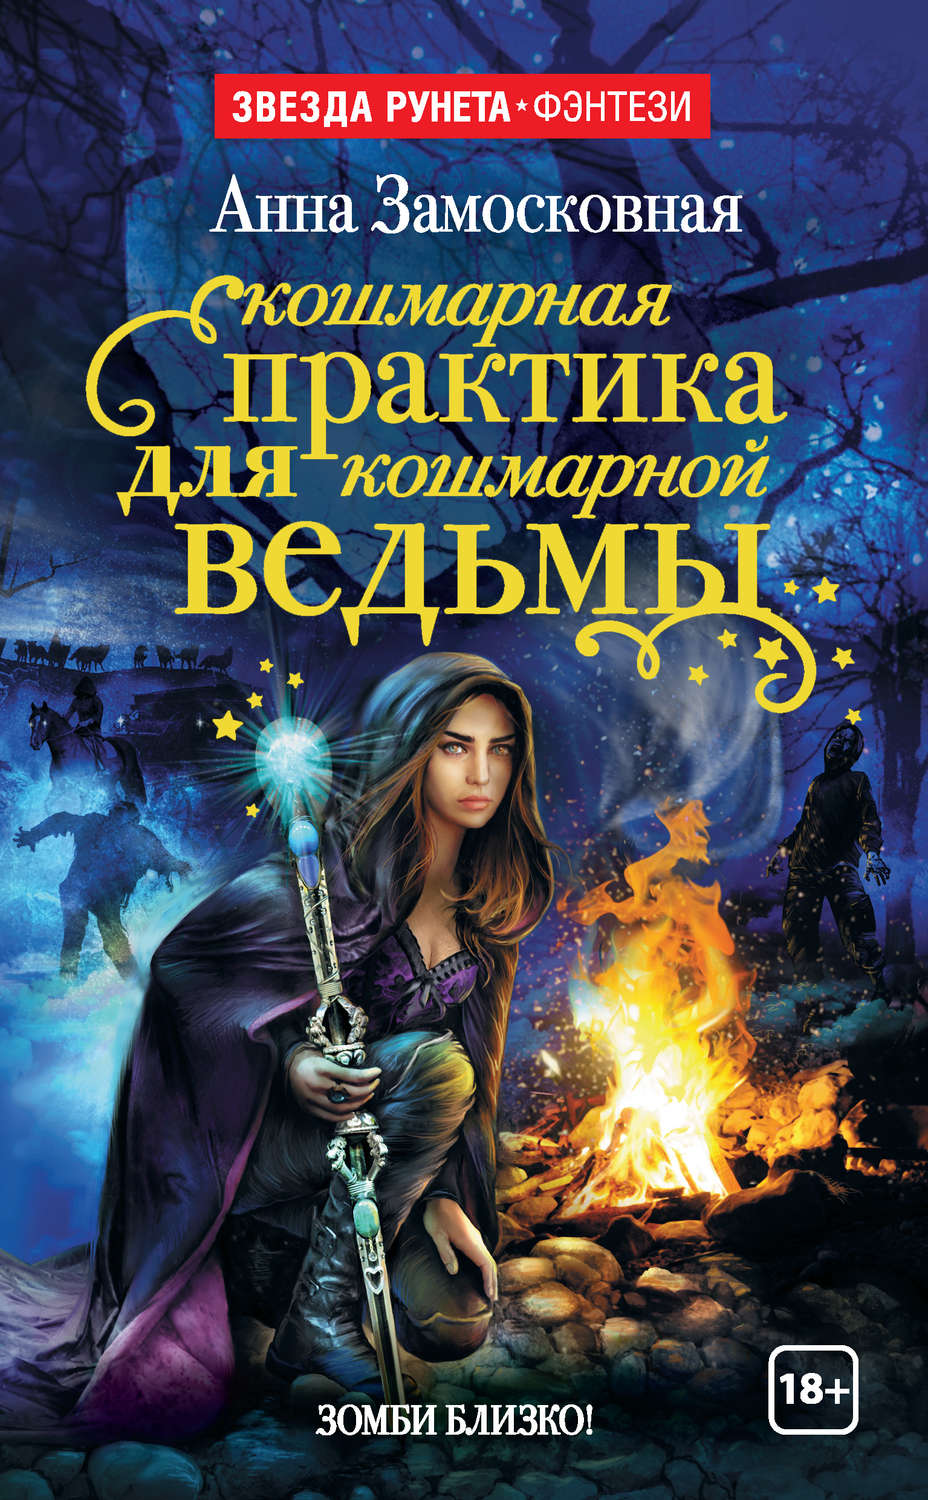 Книги про ведьмы фэнтези магические. Книги фэнтези. Книга магии. Книга про ведьмочку.